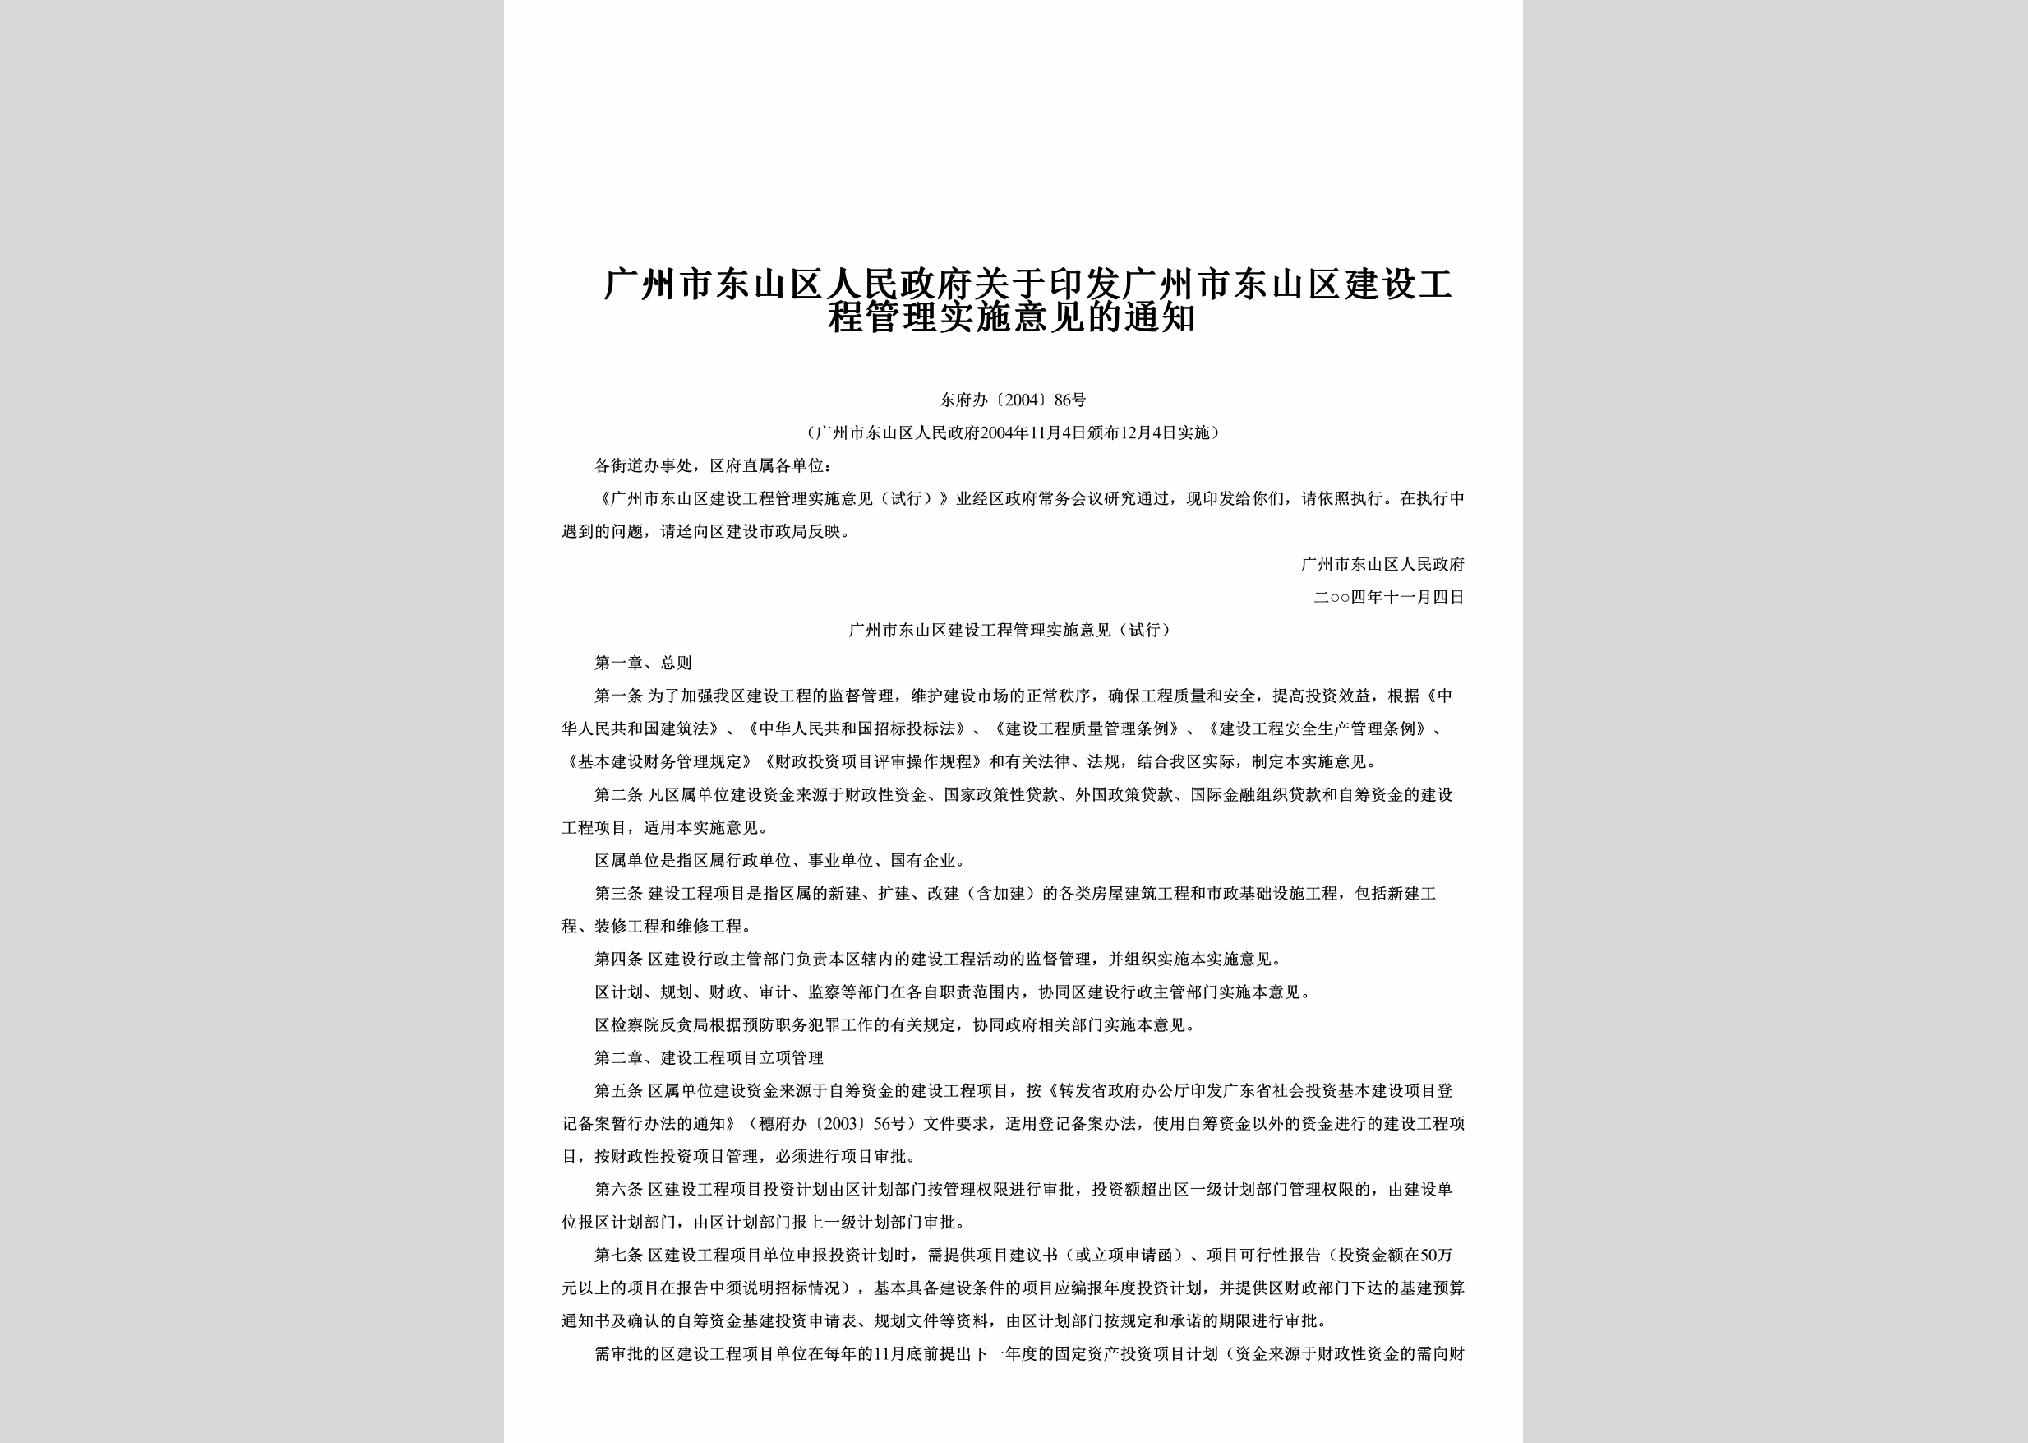 东府办[2004]86号：关于印发广州市东山区建设工程管理实施意见的通知